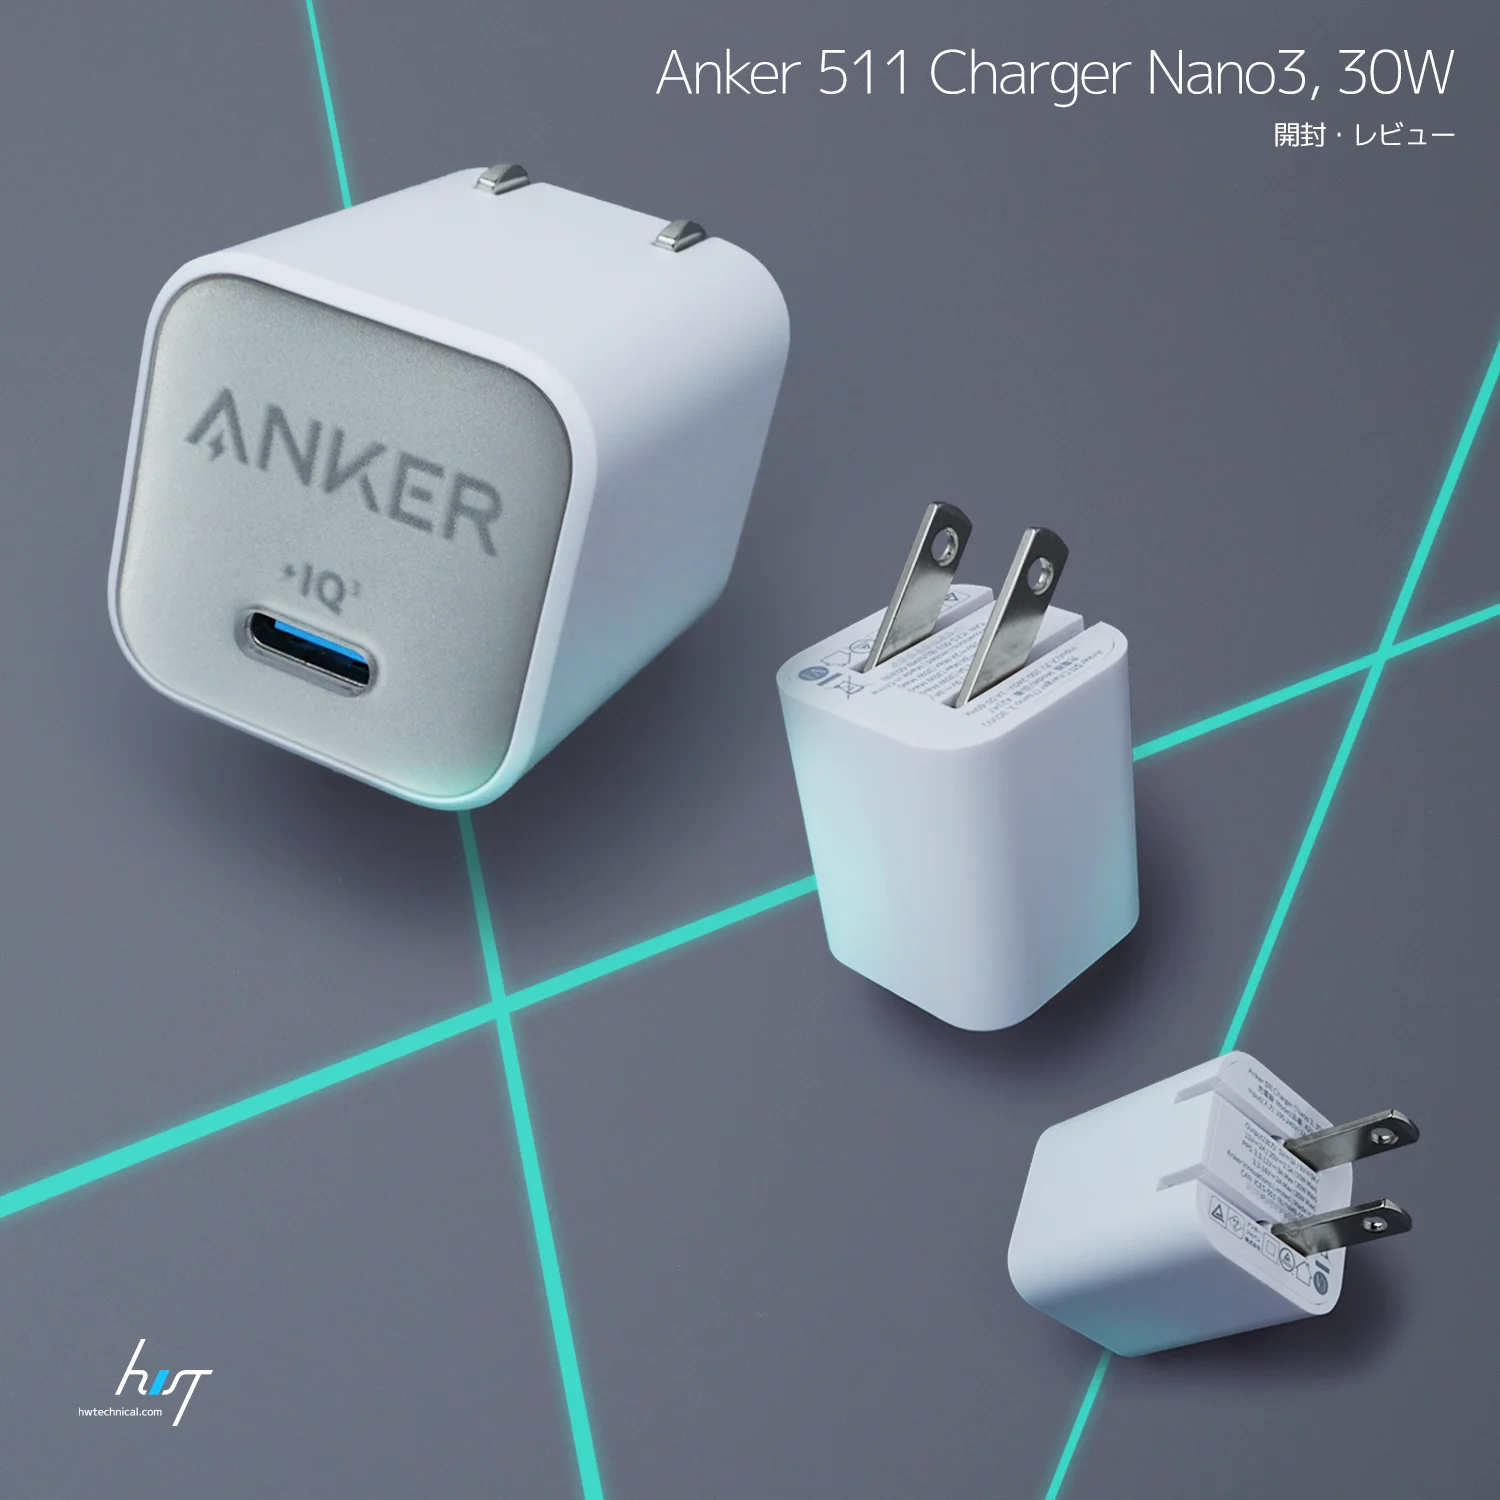 プラグがたためてコンパクトな「Anker 511 Charger Nano3,30W ホワイト」